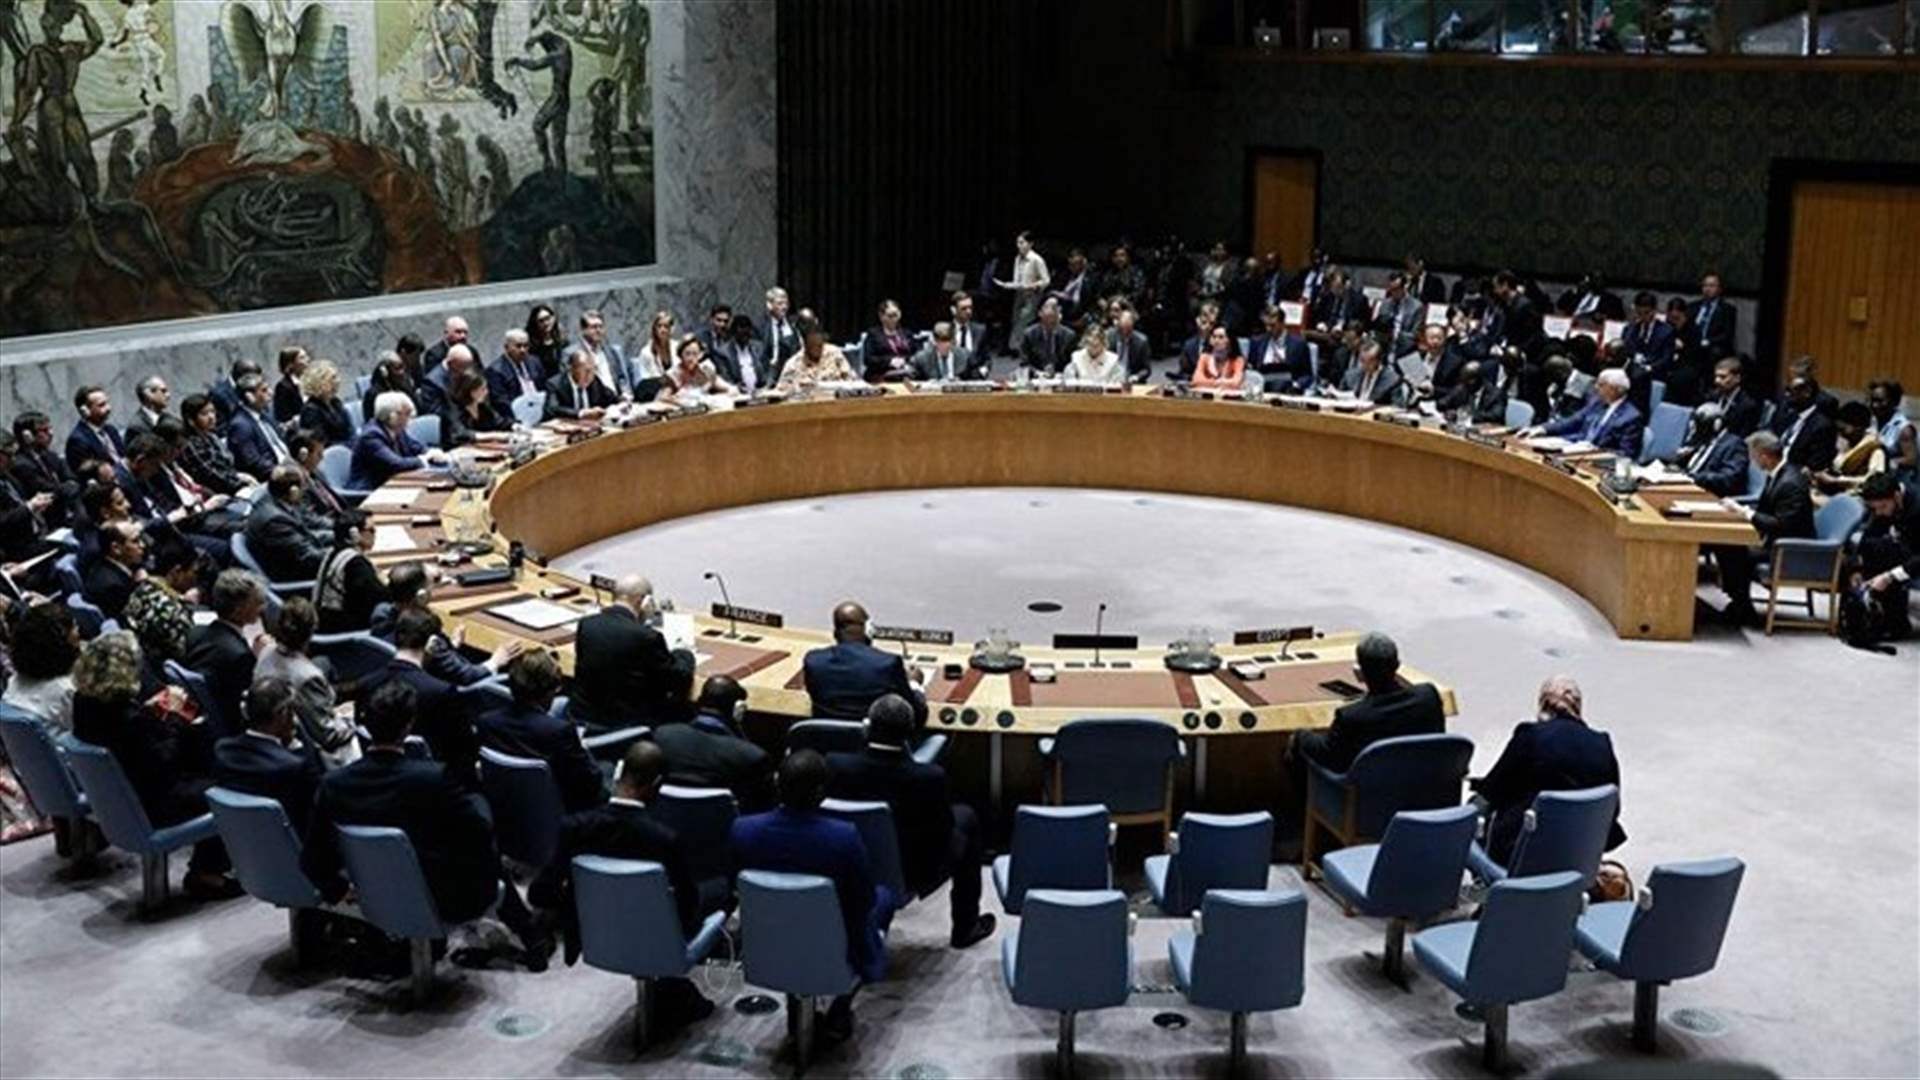 مجلس الأمن الدولي يصوت على طلب فلسطين للحصول على عضوية كاملة في الأمم المتحدة: تحرك مثير متوقع أن يواجه الفيتو الأمريكي